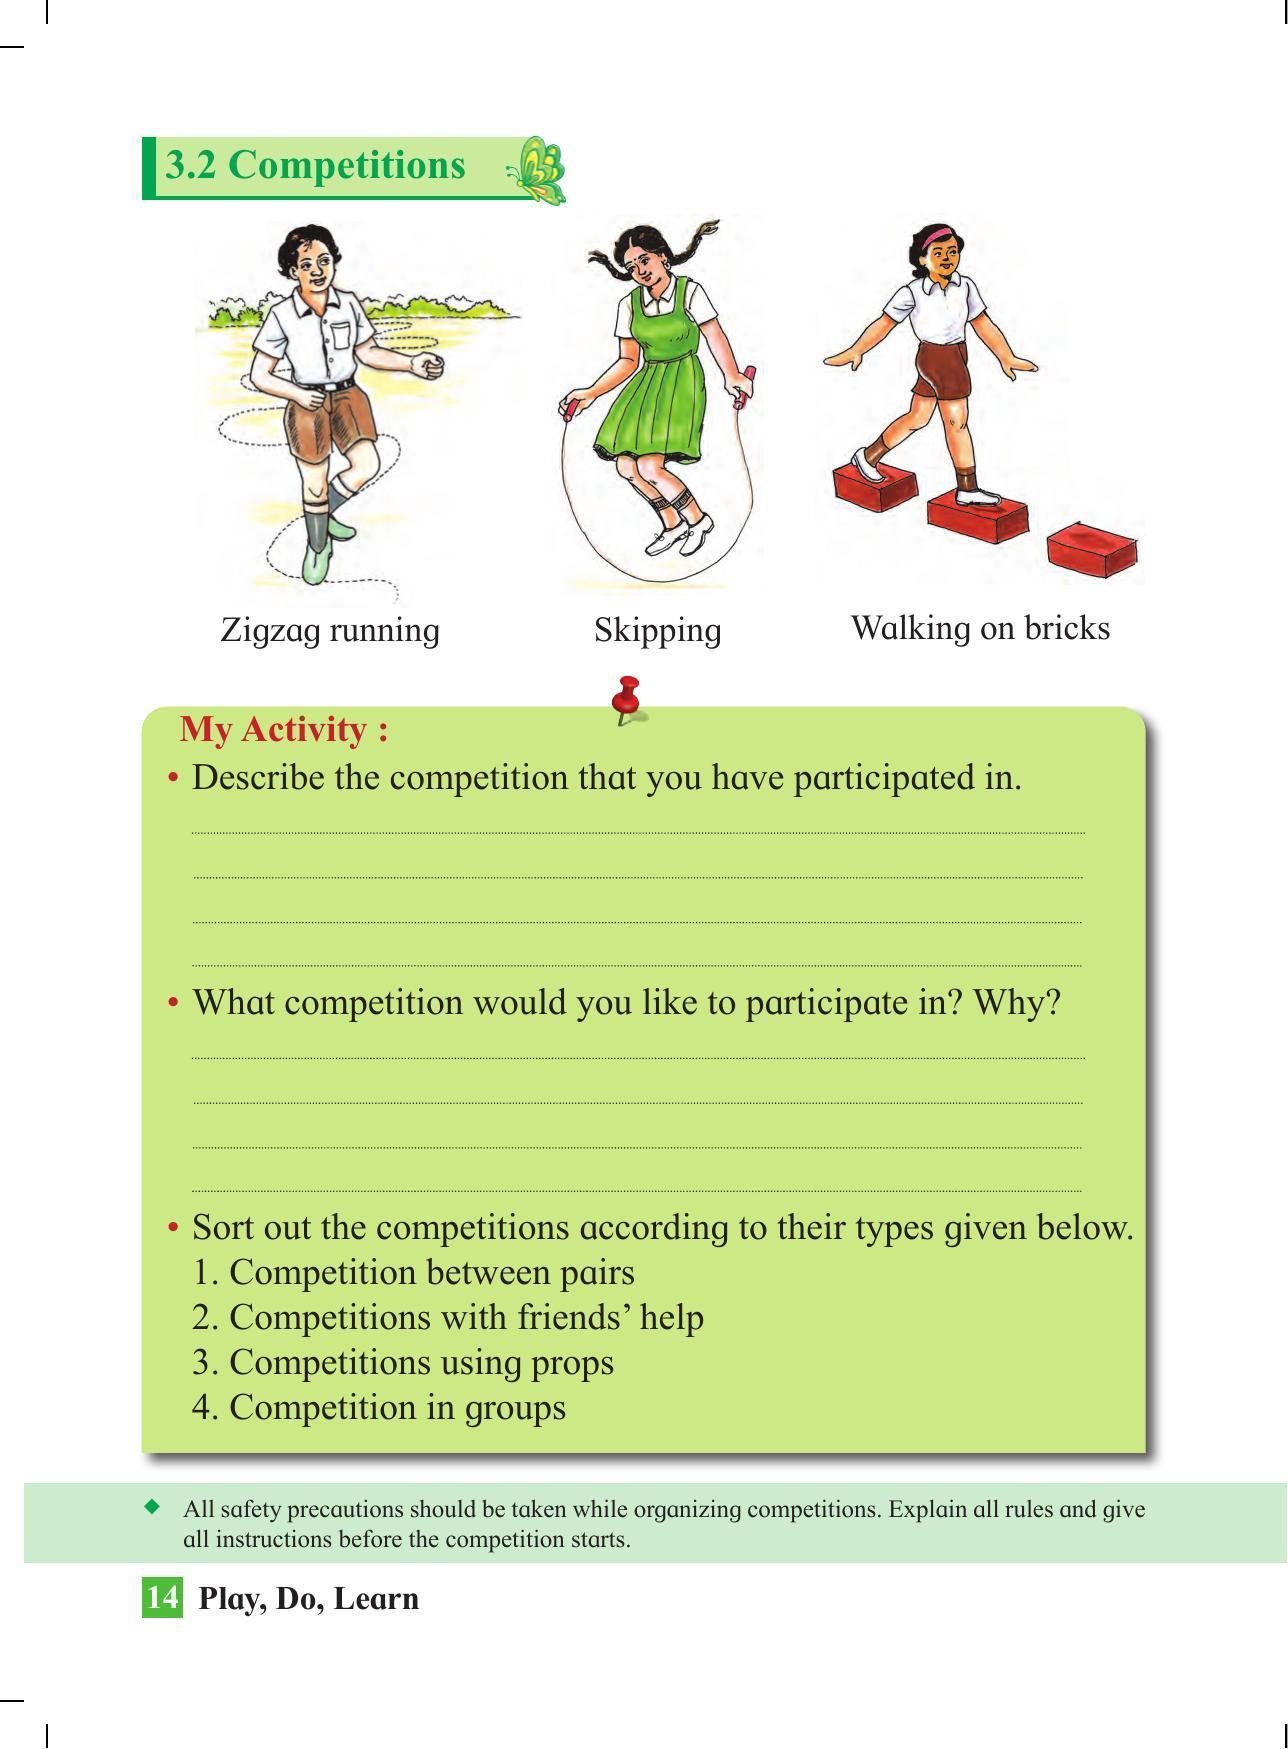 Maharashtra Board Class 4 Play Do Learn (English Medium) Textbook - Page 23